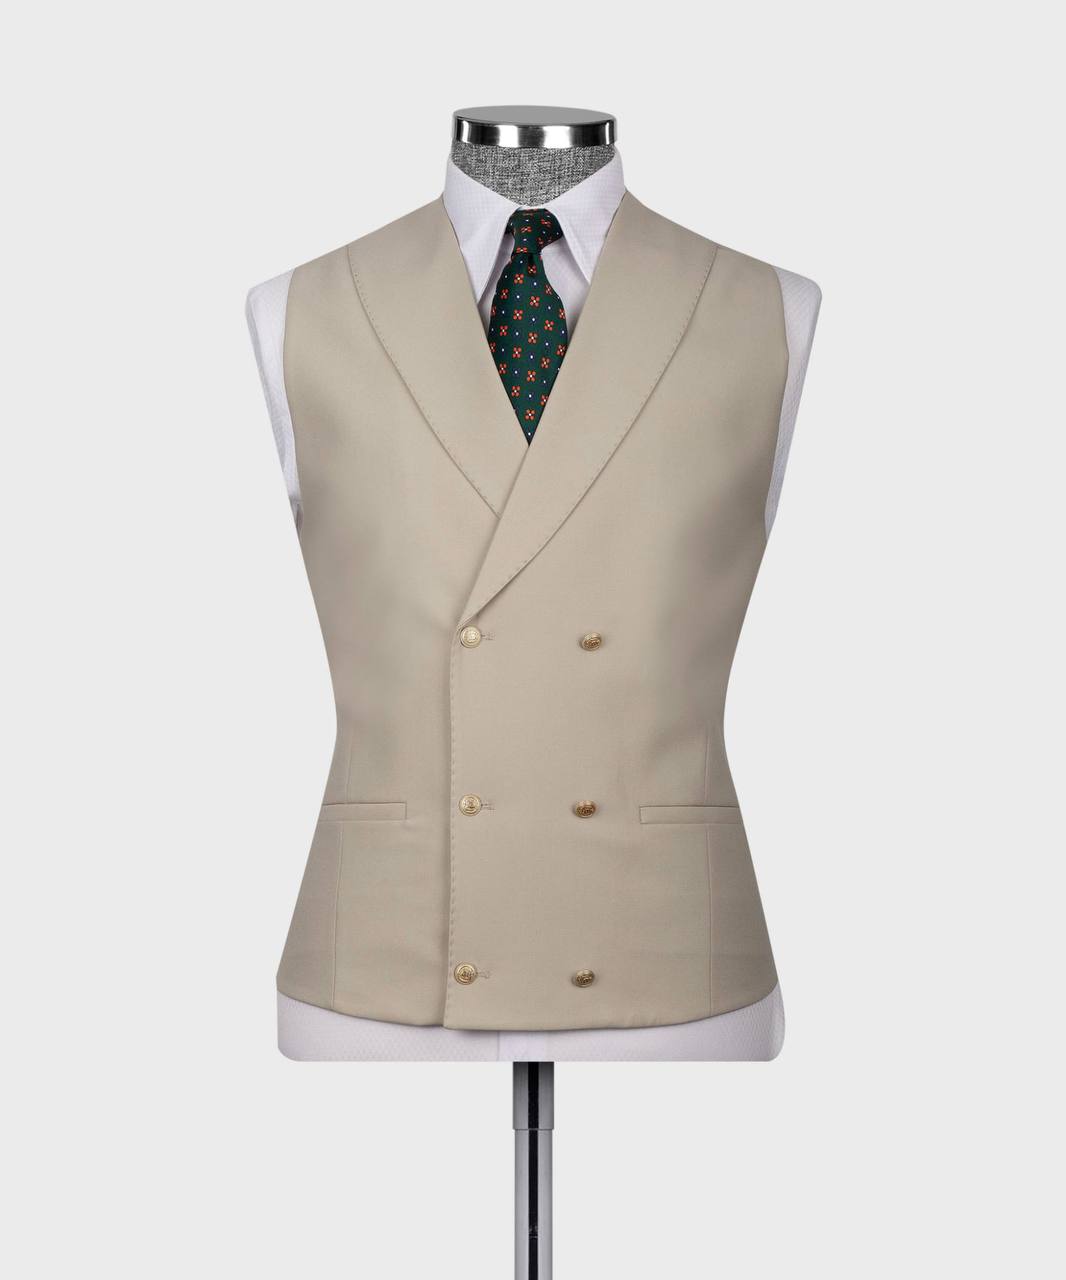 Men's Suit Set, %100 Wool, Stone